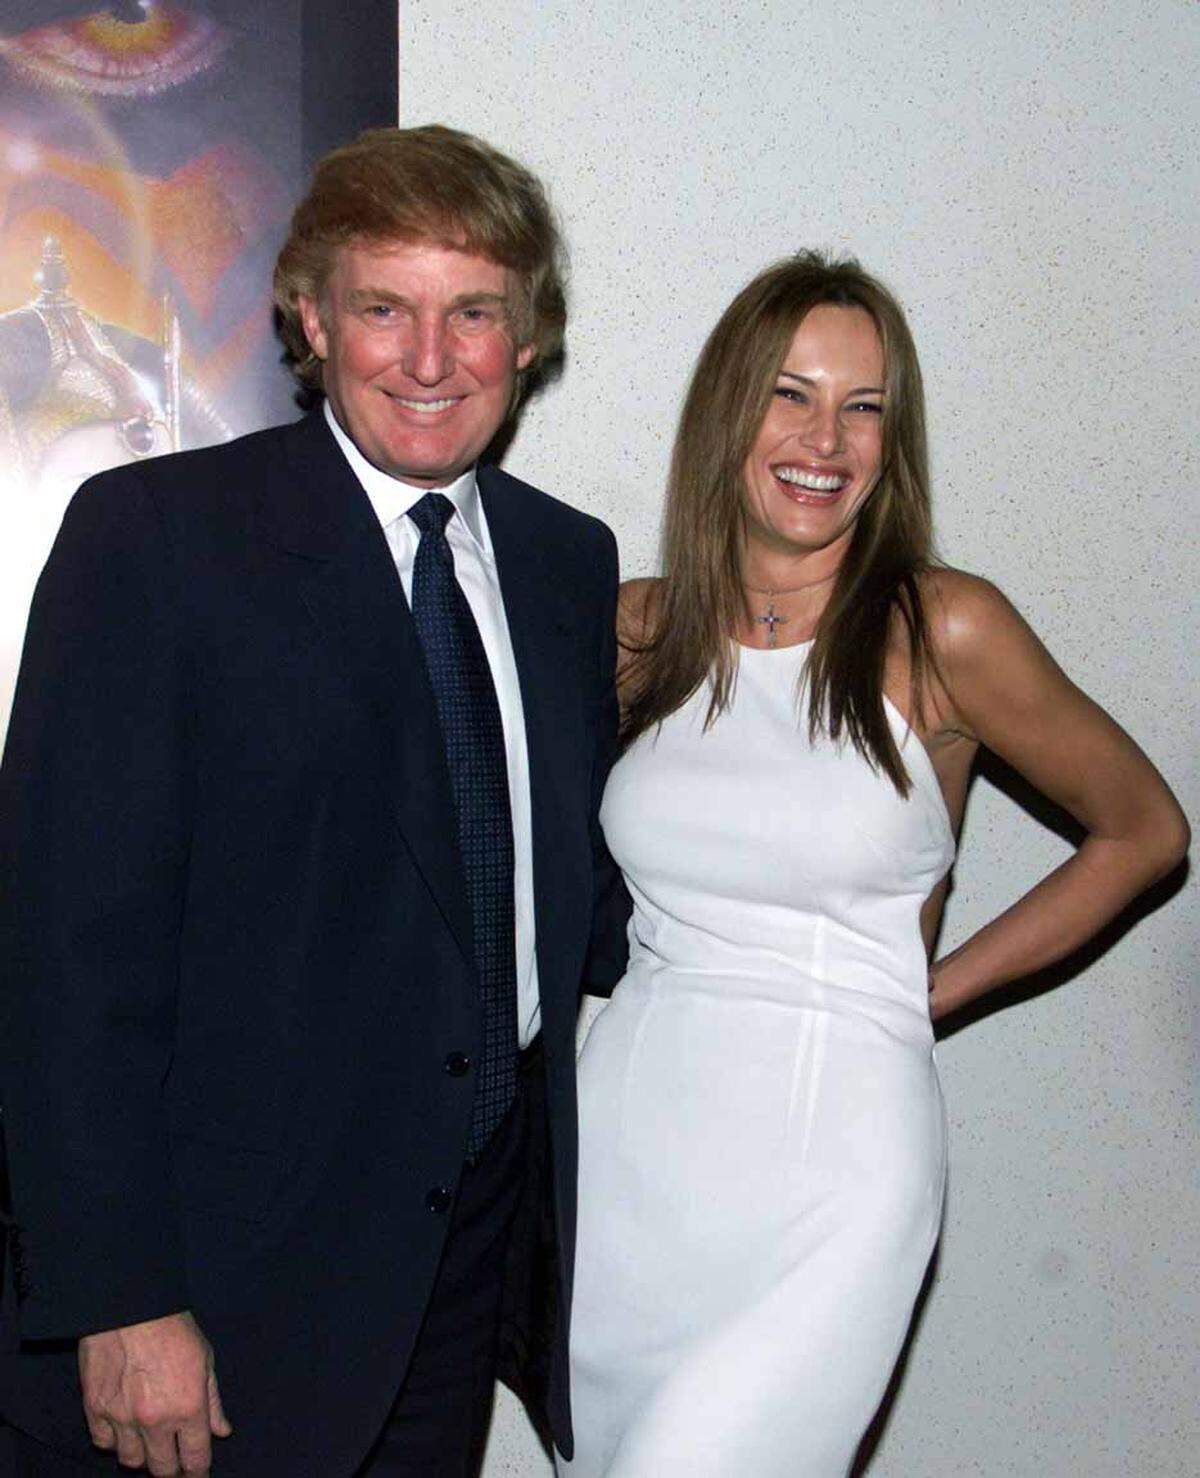 Melania Knauss und Donald Trump im Jahr 1999.